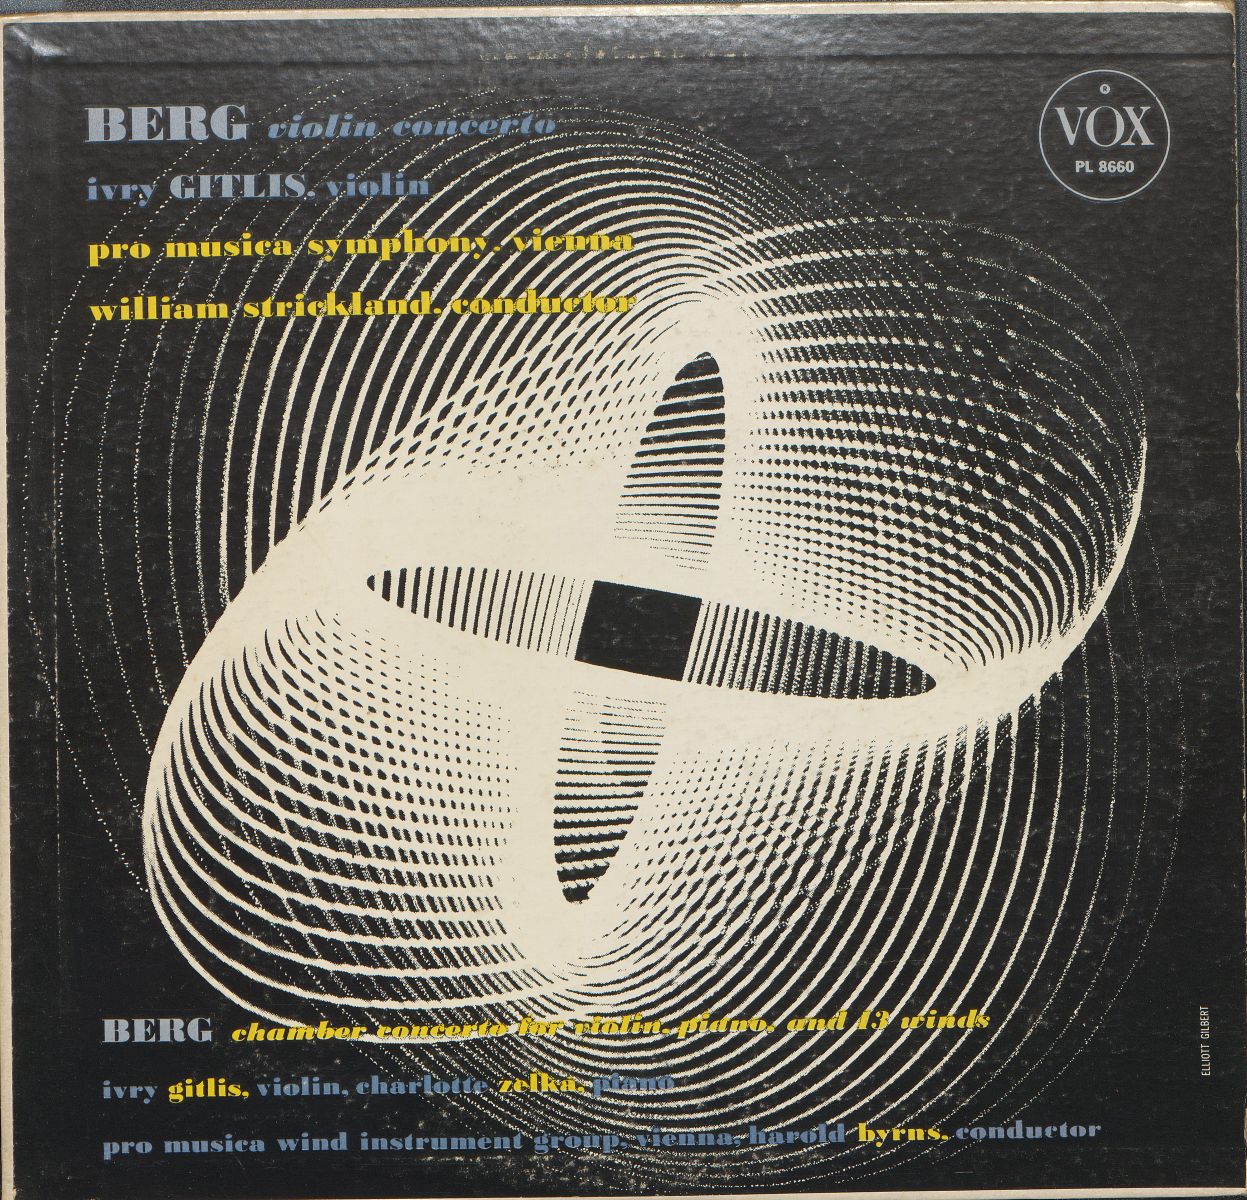 Een opname met muziek van Alban Berg (1885-1935) met een kwantummechanica-achtige cover. Anders gezegd expressionisme in combinatie met wetenschap. Is dit logisch? Stilistisch kan dit vragen oproepen, maar historisch gezien is het niet onzinnig. De kwantumechanica dateert van 1926, precies de periode waarin Berg zijn werken schreef. B-Bc E-LP-00171.